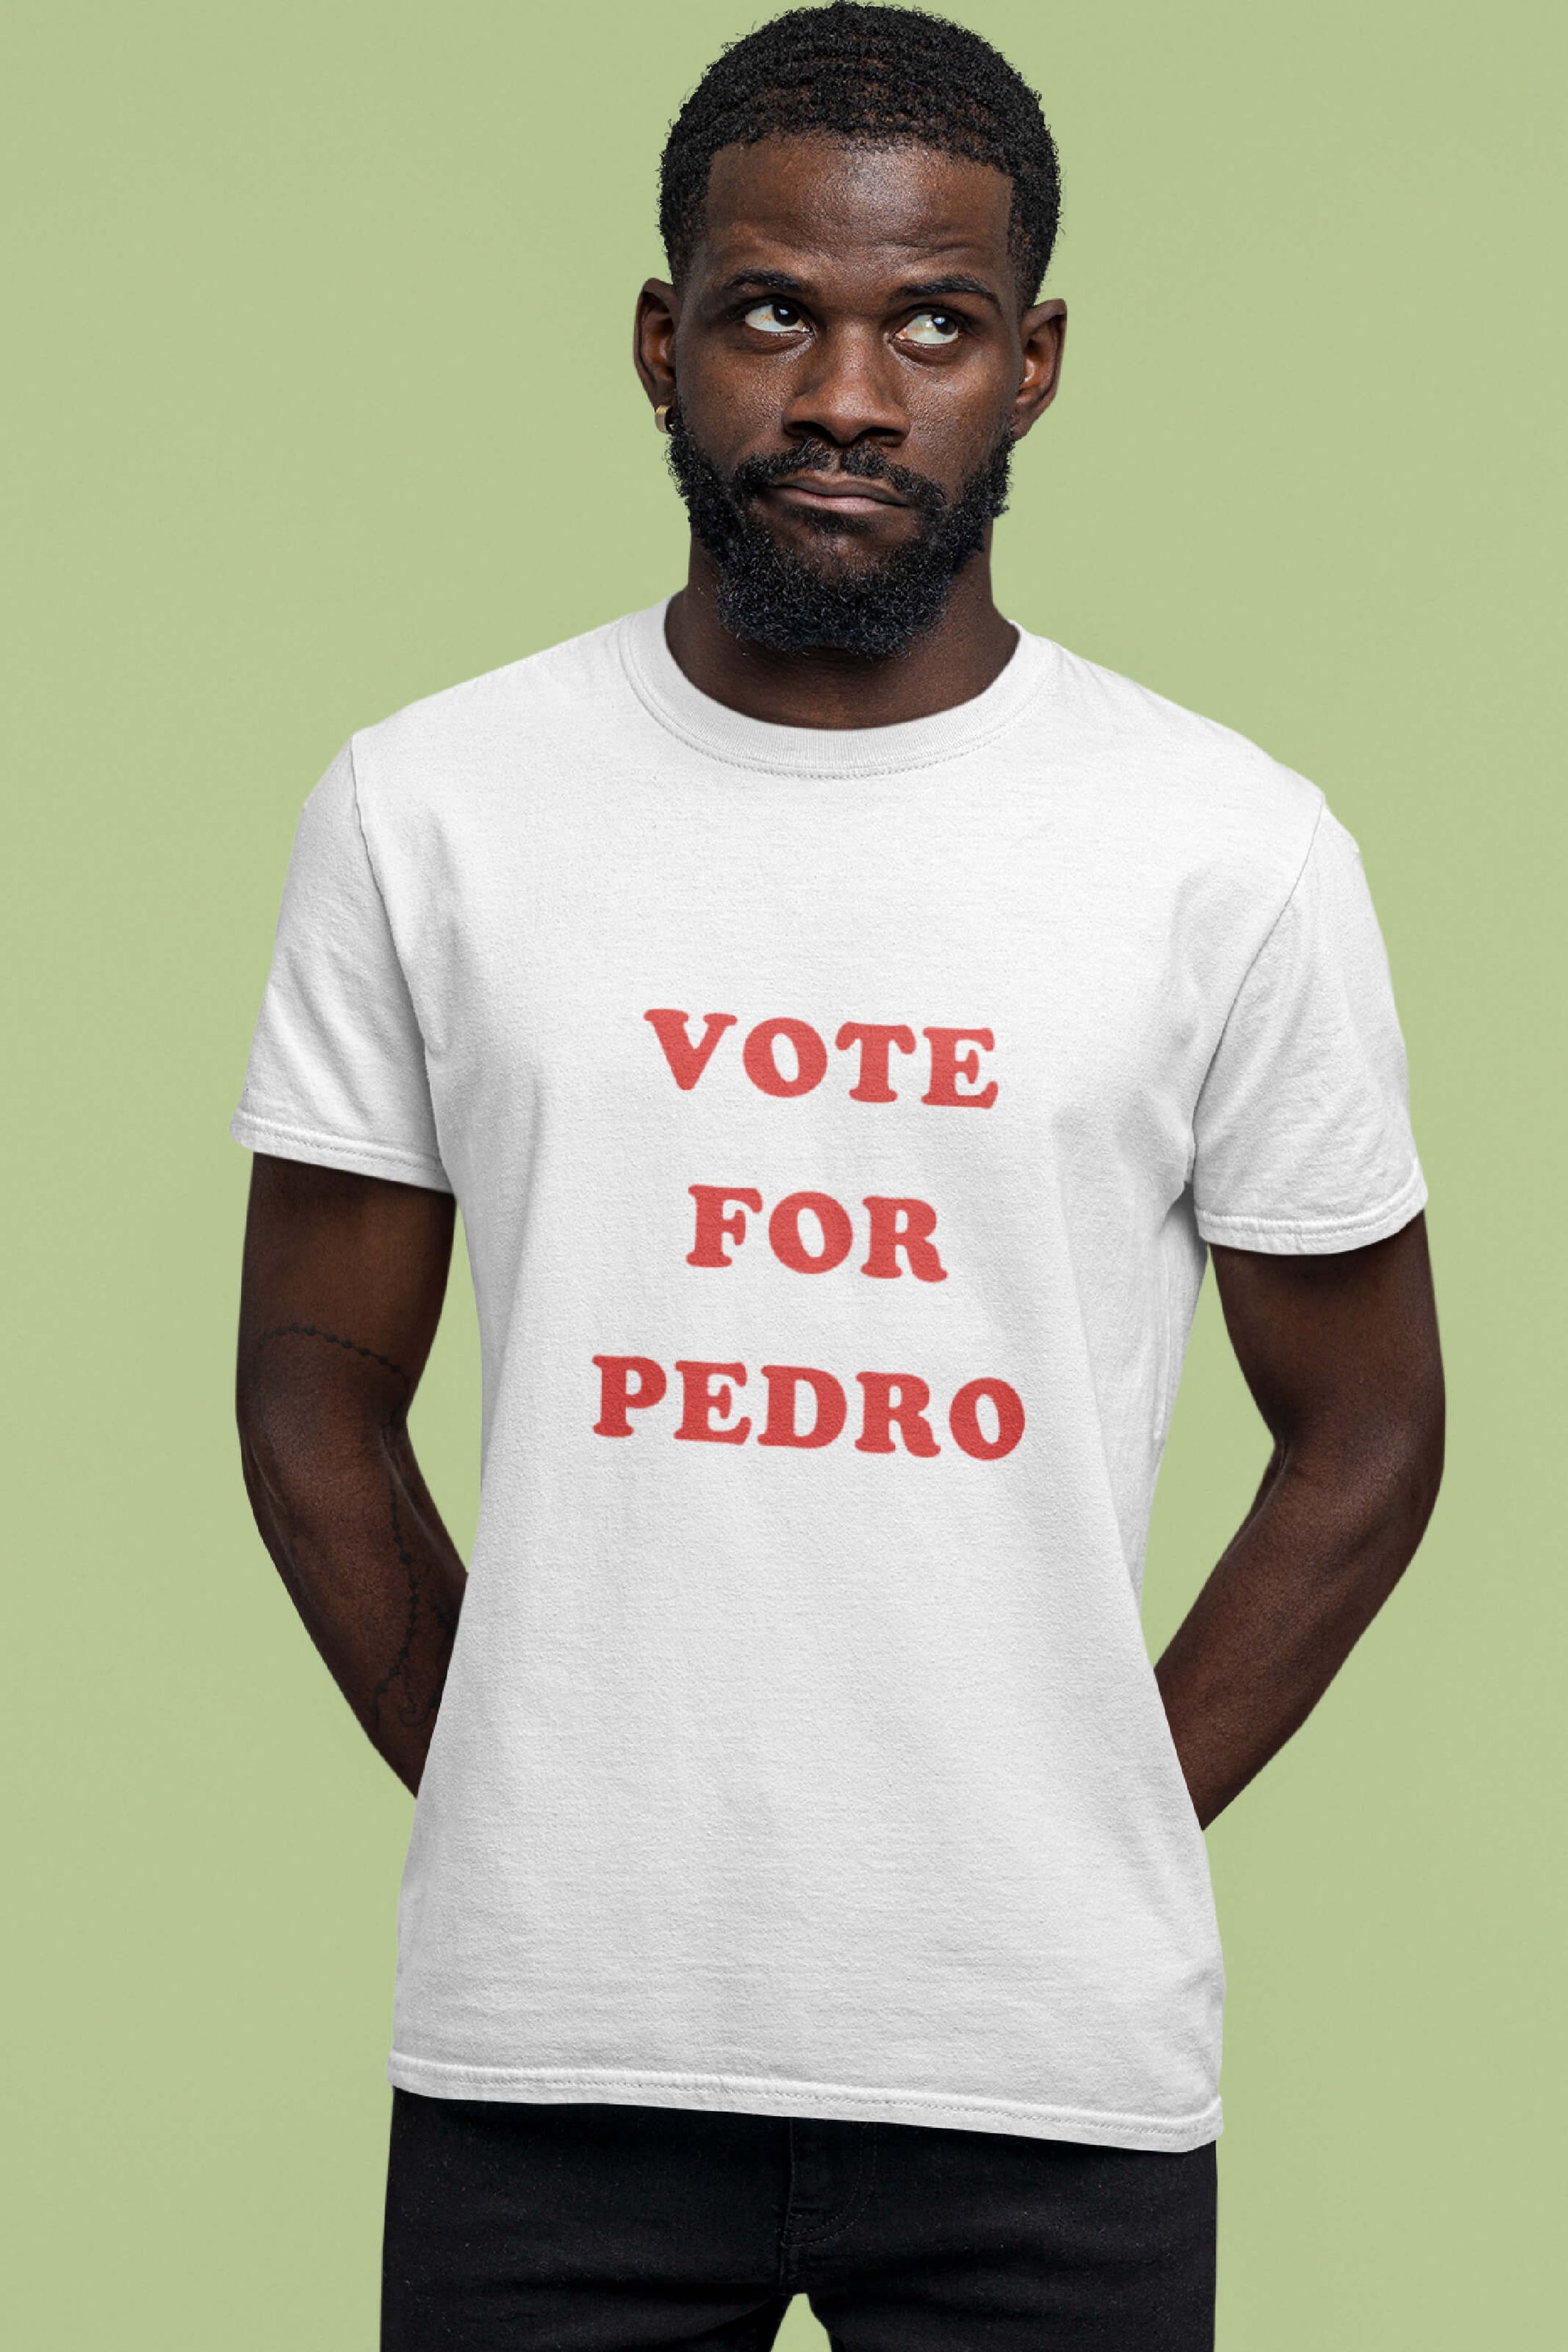 napoleon dynamite vote for pedro dance